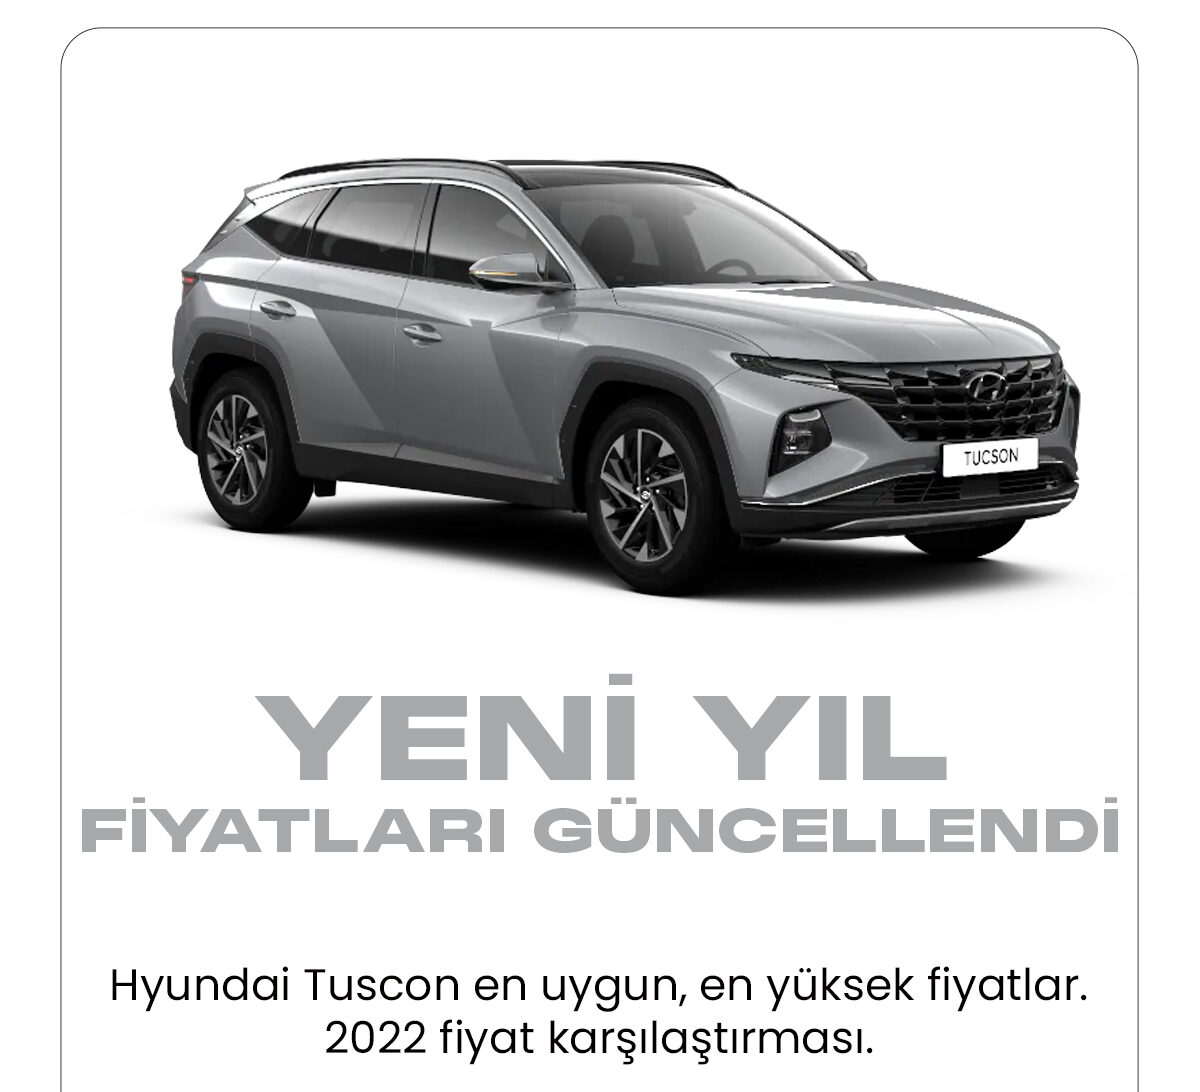 Hyundai Tuscon Ocak fiyat listesi yayımlandı. Türkiye'de en uygun araç markalarından biri olarak bilinen Hyundai yeni yılda araç fiyatlarını güncelledi.